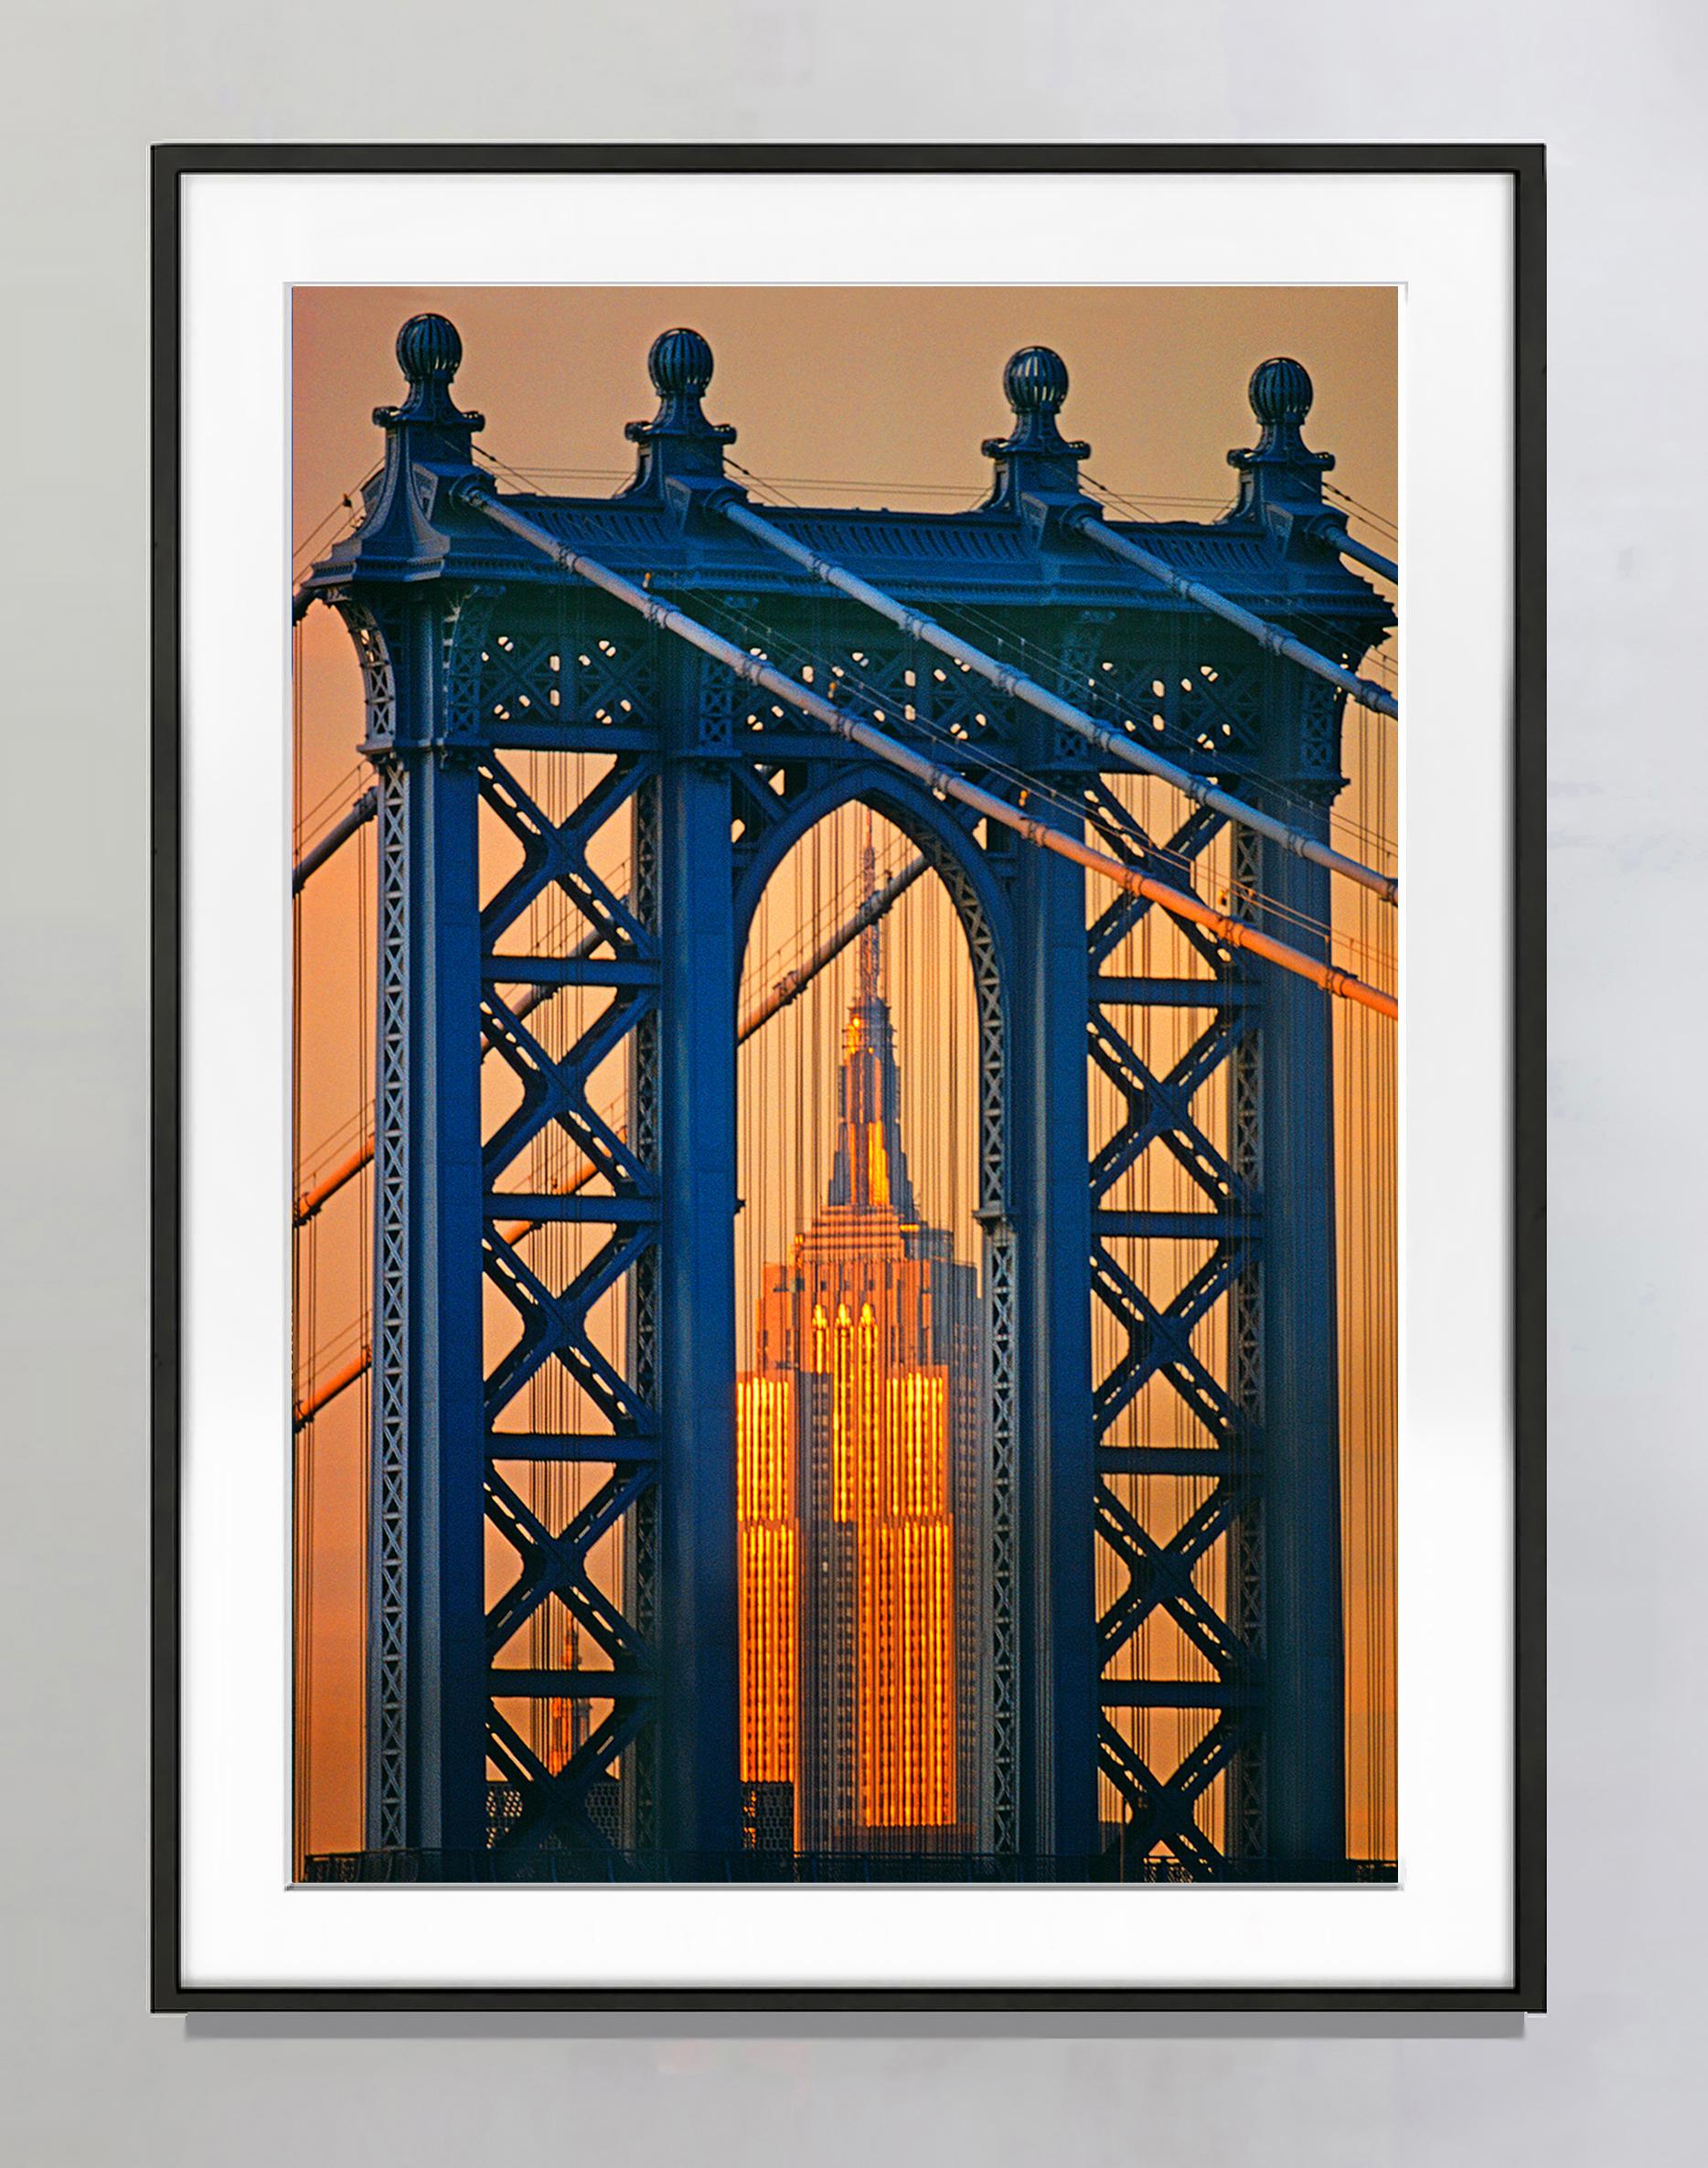 Manhattan Bridge, Empire State Building, Landschaftsfotografie (Impressionismus), Photograph, von Mitchell Funk